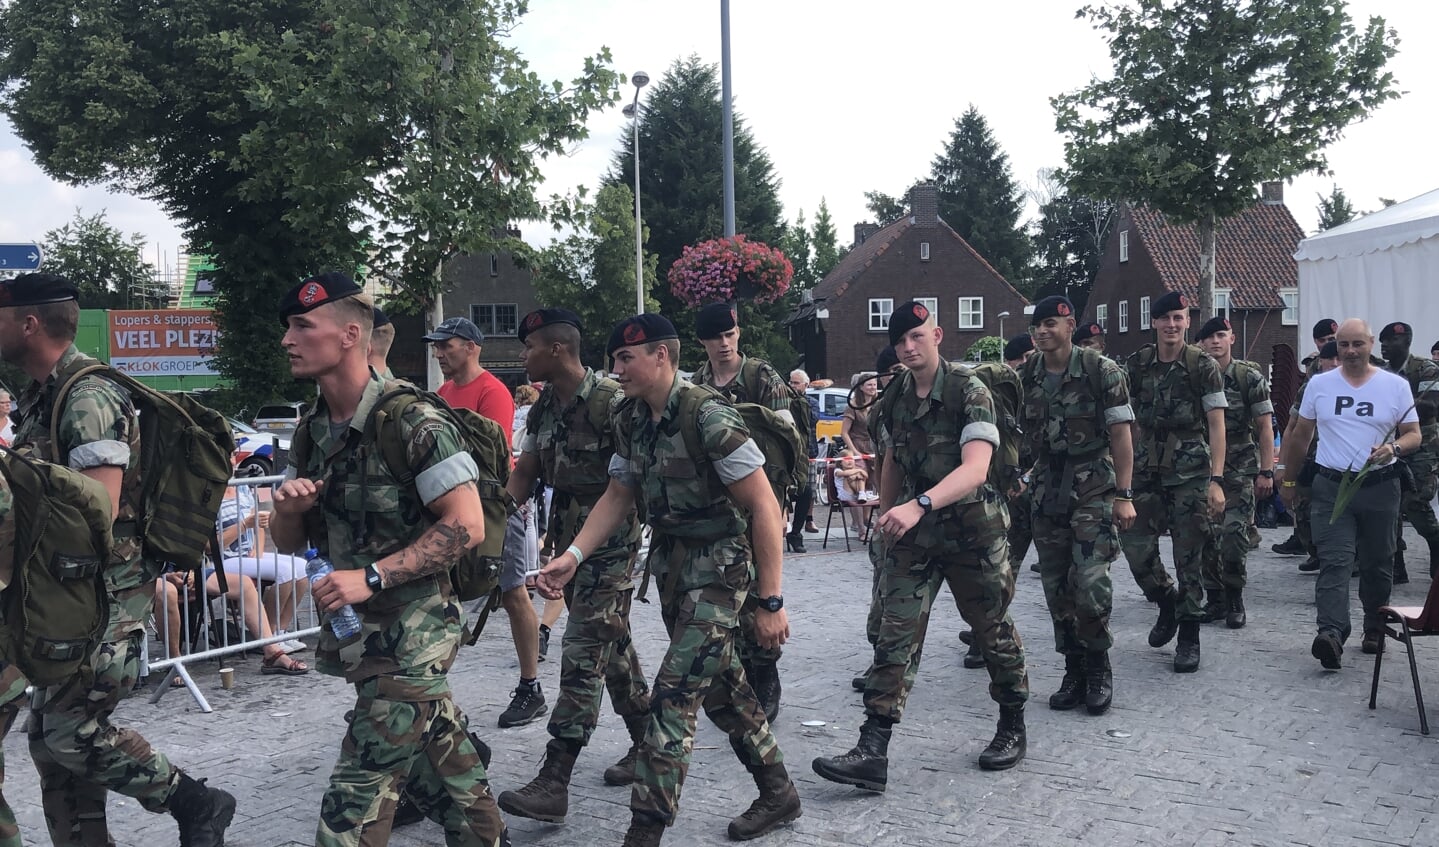 Militairen marcheren door het centrum van Mook, dat de wandelaars op weg naar de Via Gladiola in Nijmegen verwelkomt.